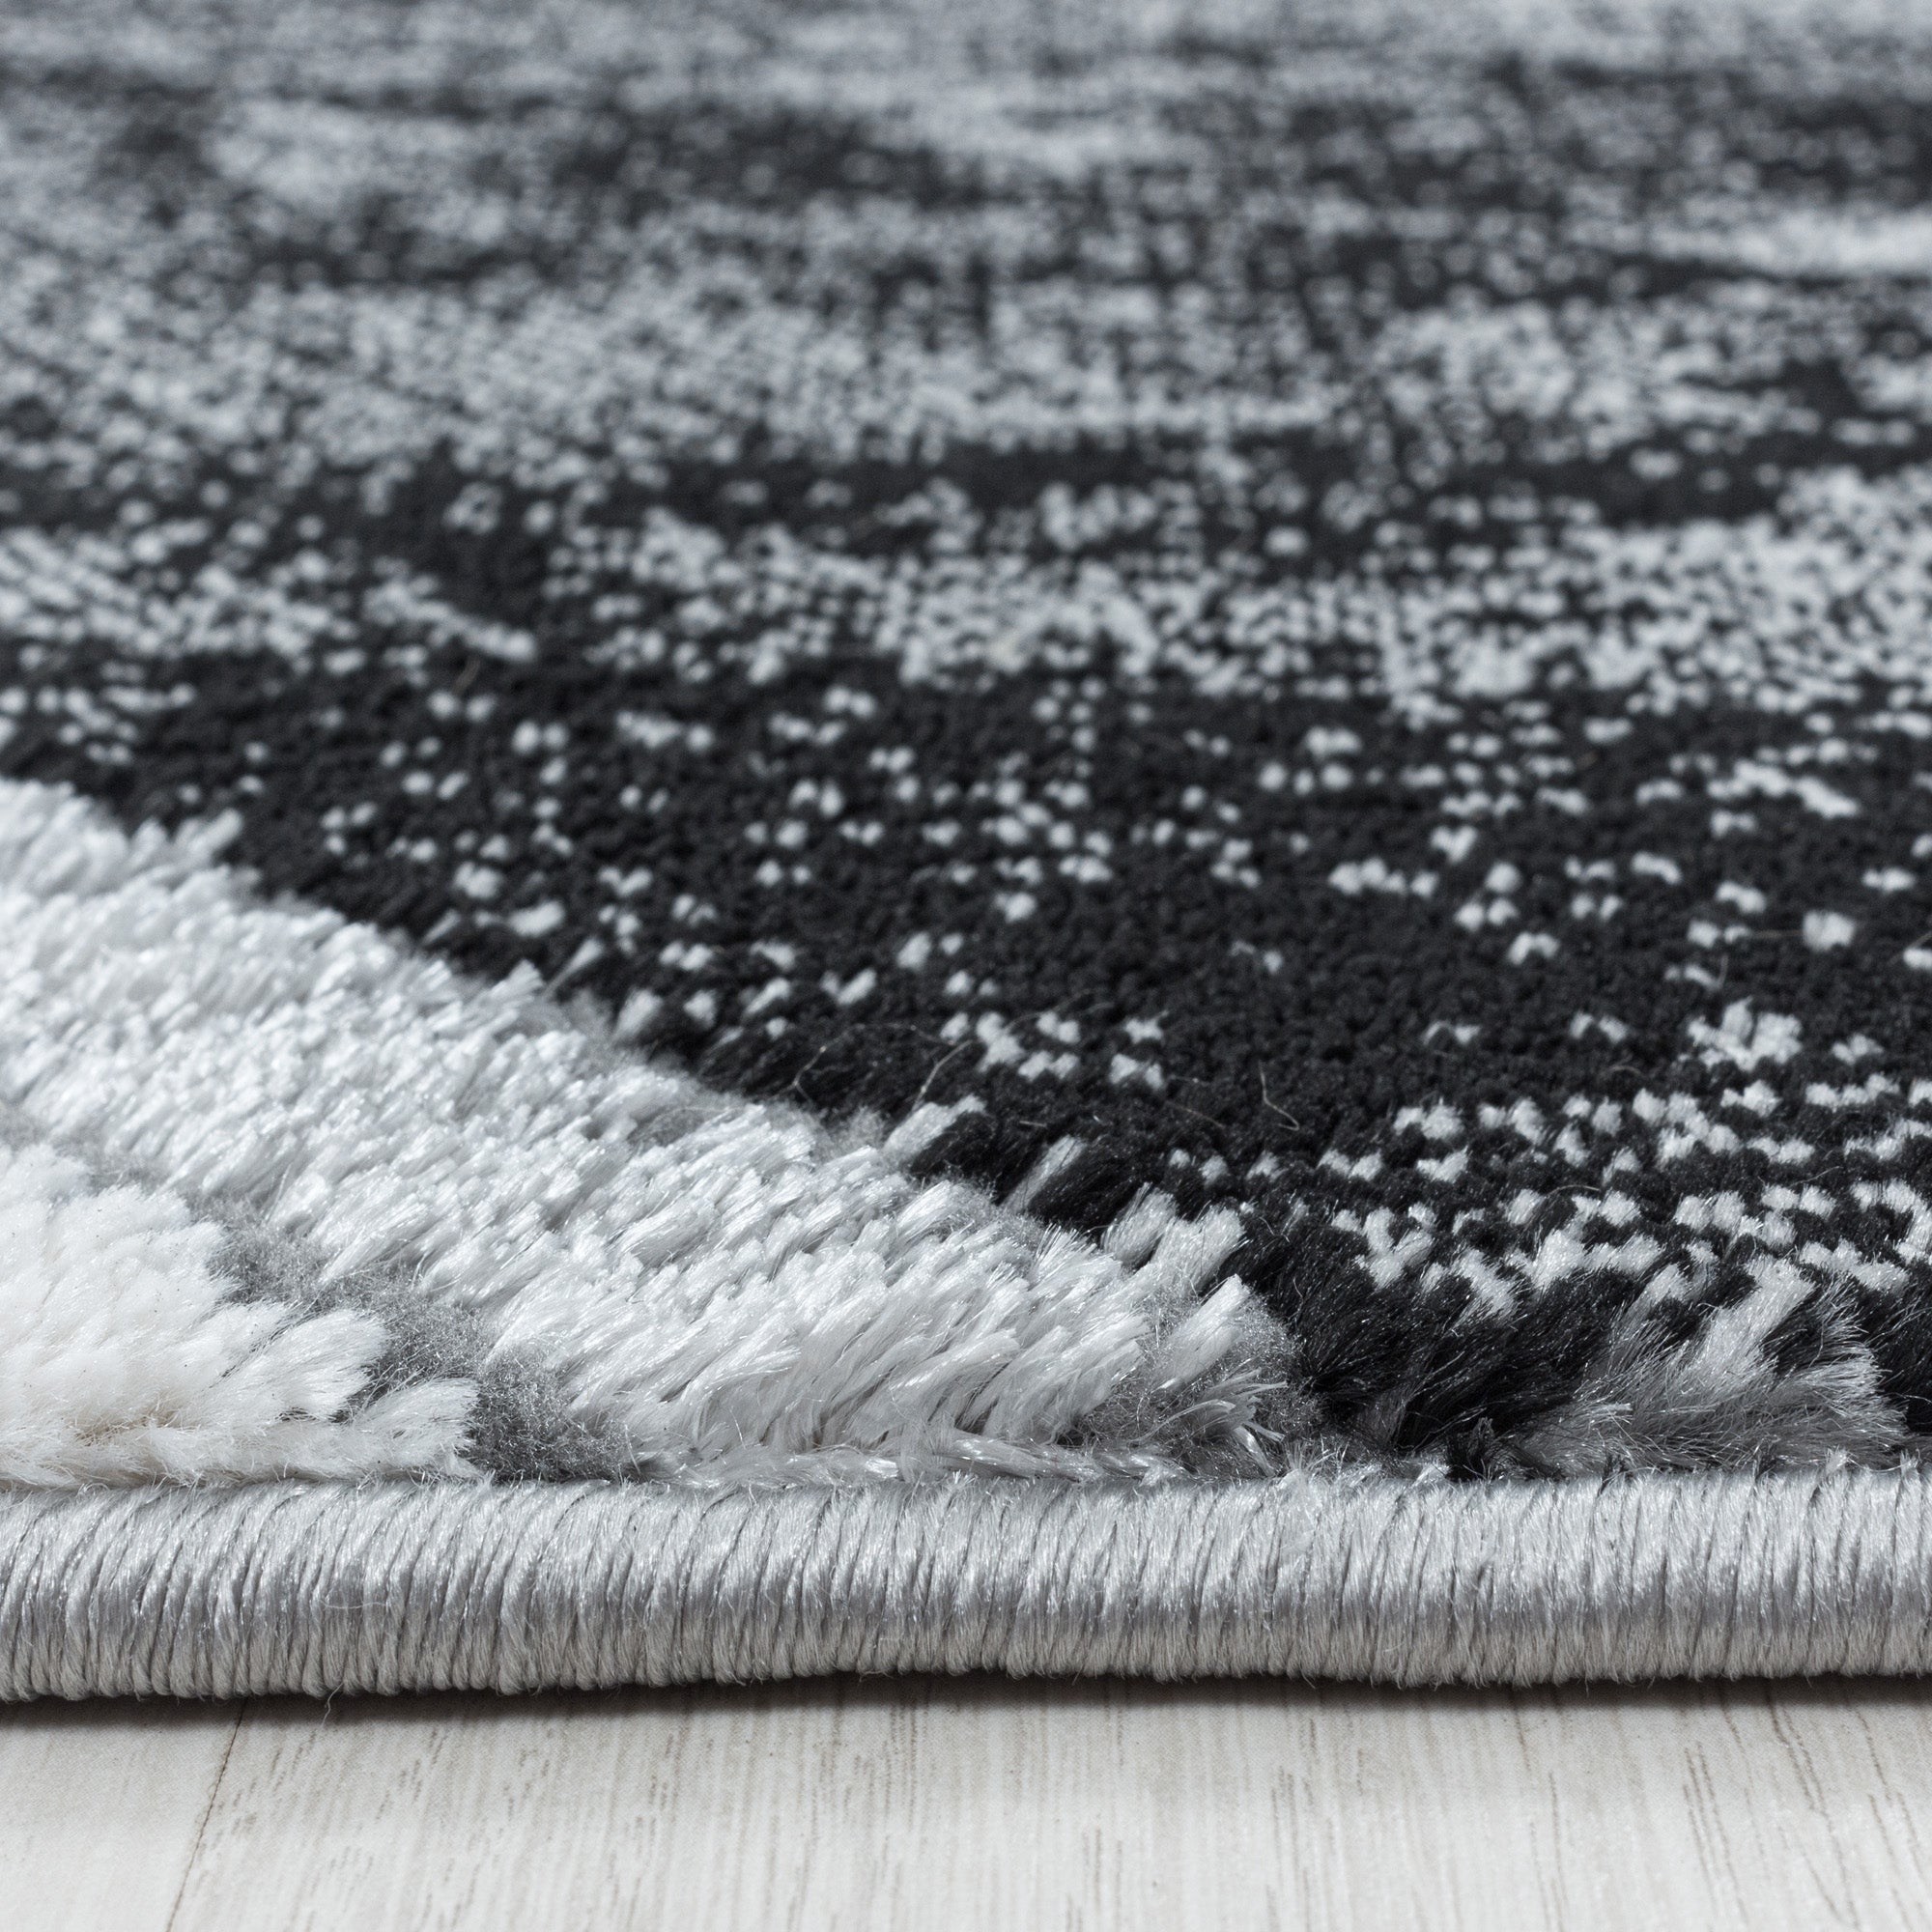 Teppich Wohnzimmer Skandinavisch Design Teppich Marmor Optik mit Glanzfasern